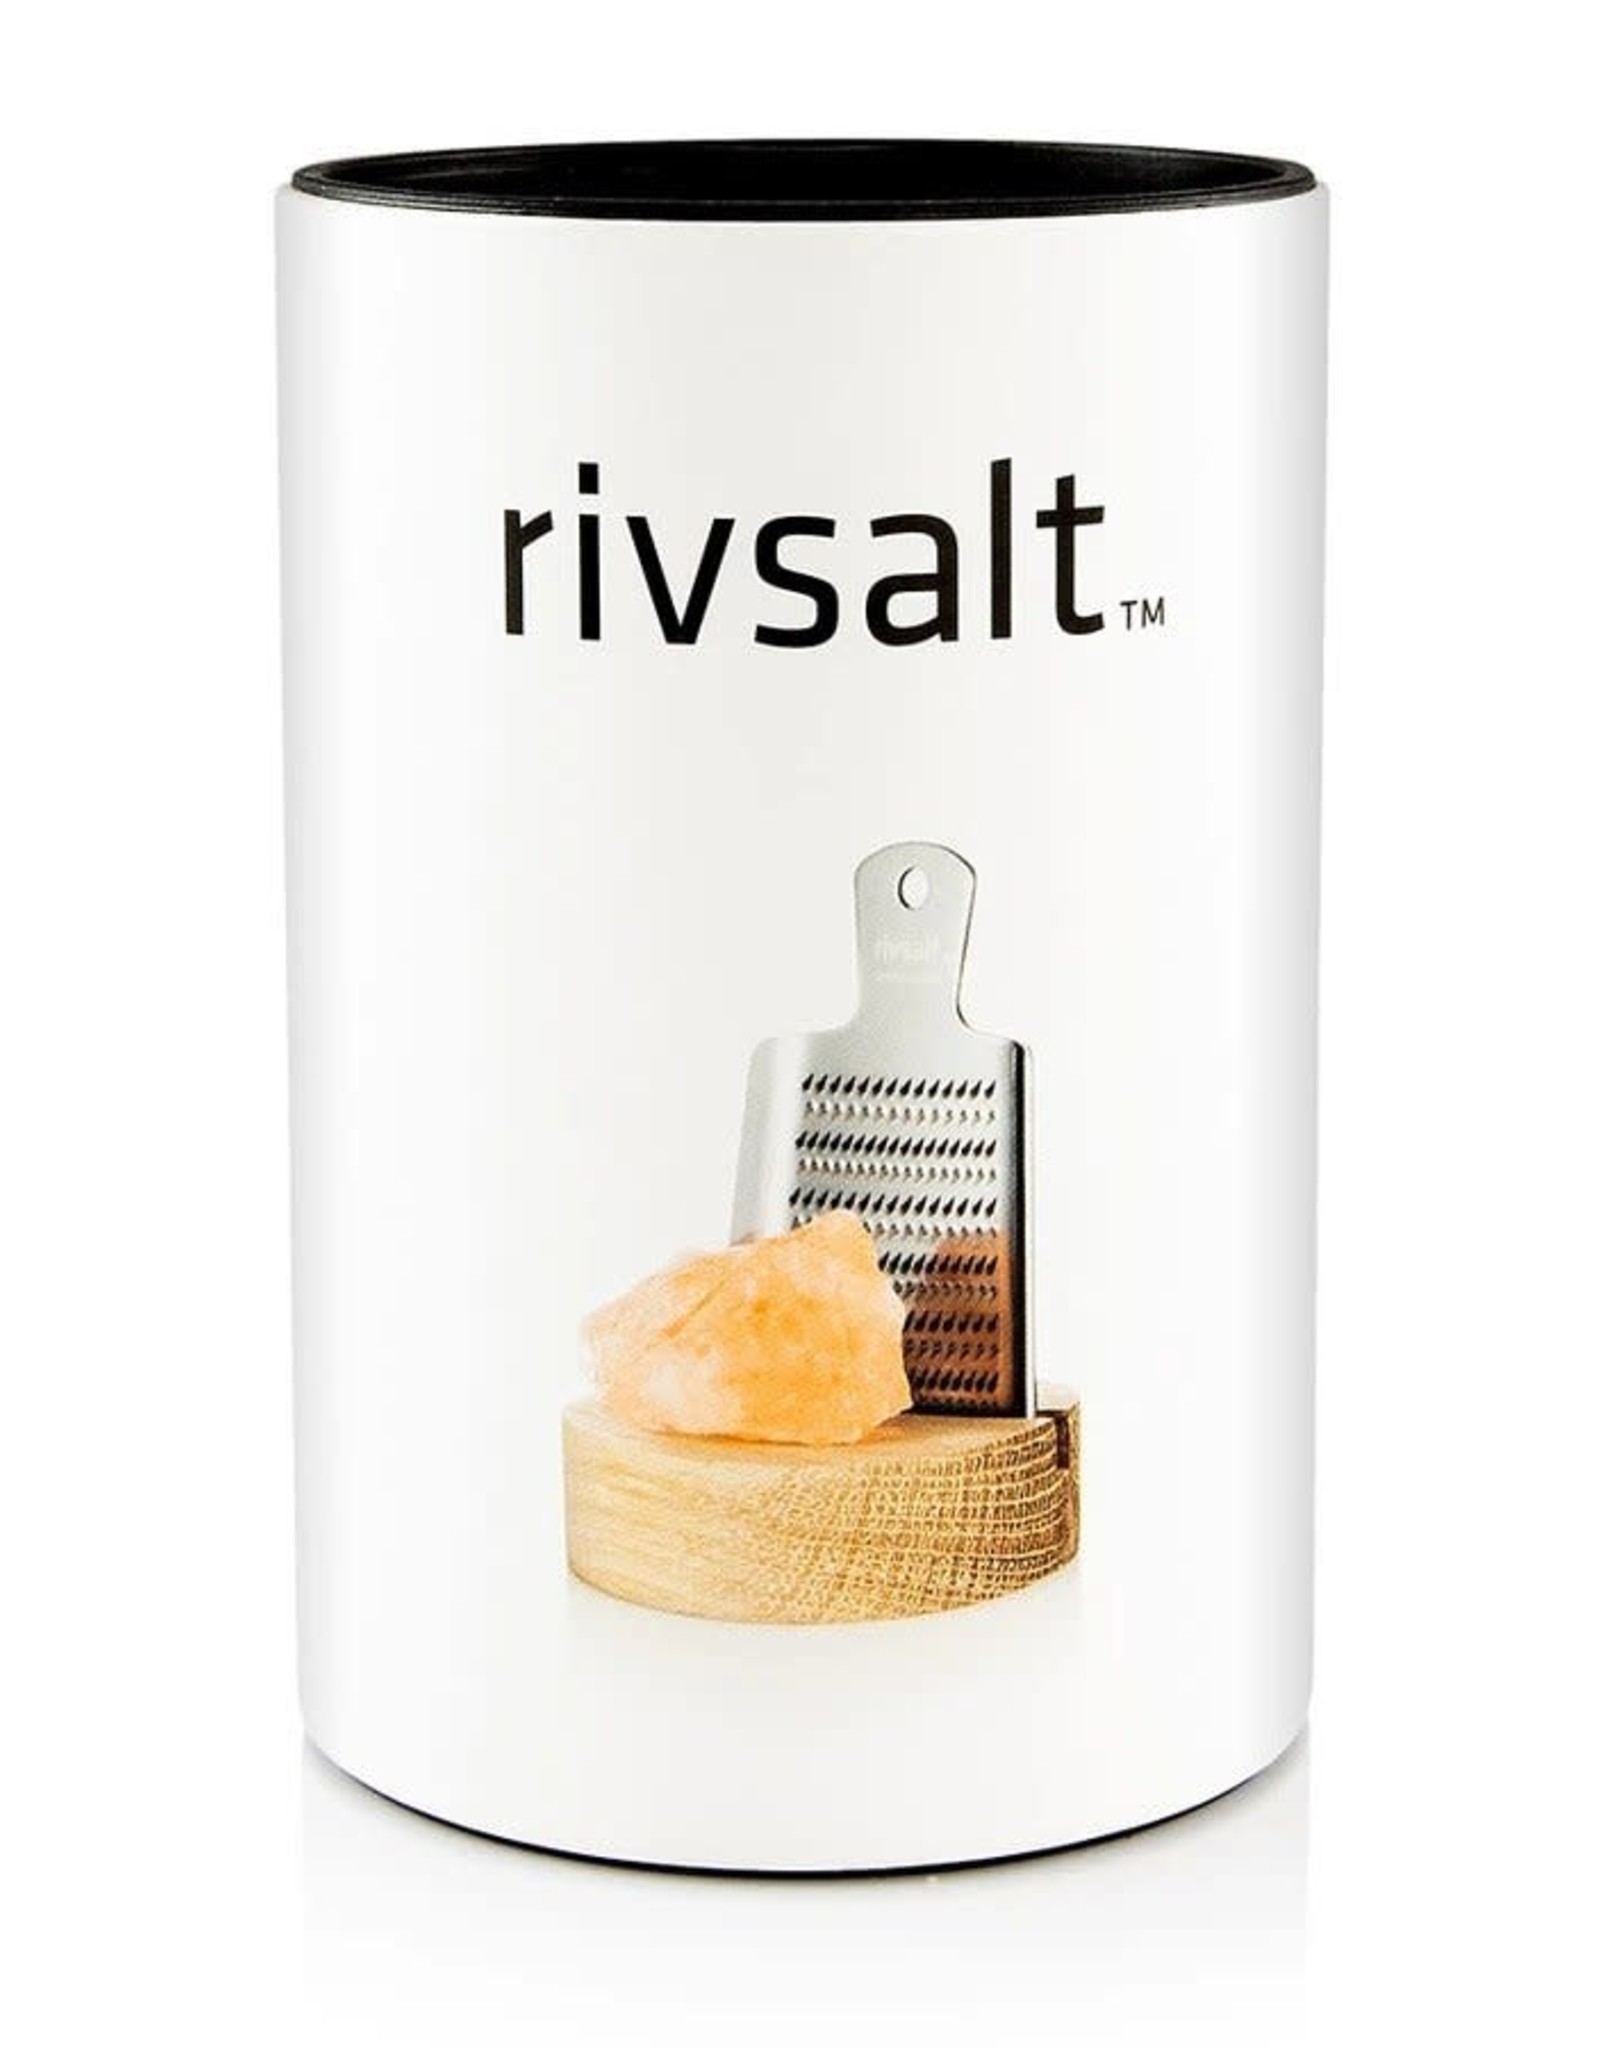 Rivsalt Rivsalt - The Original